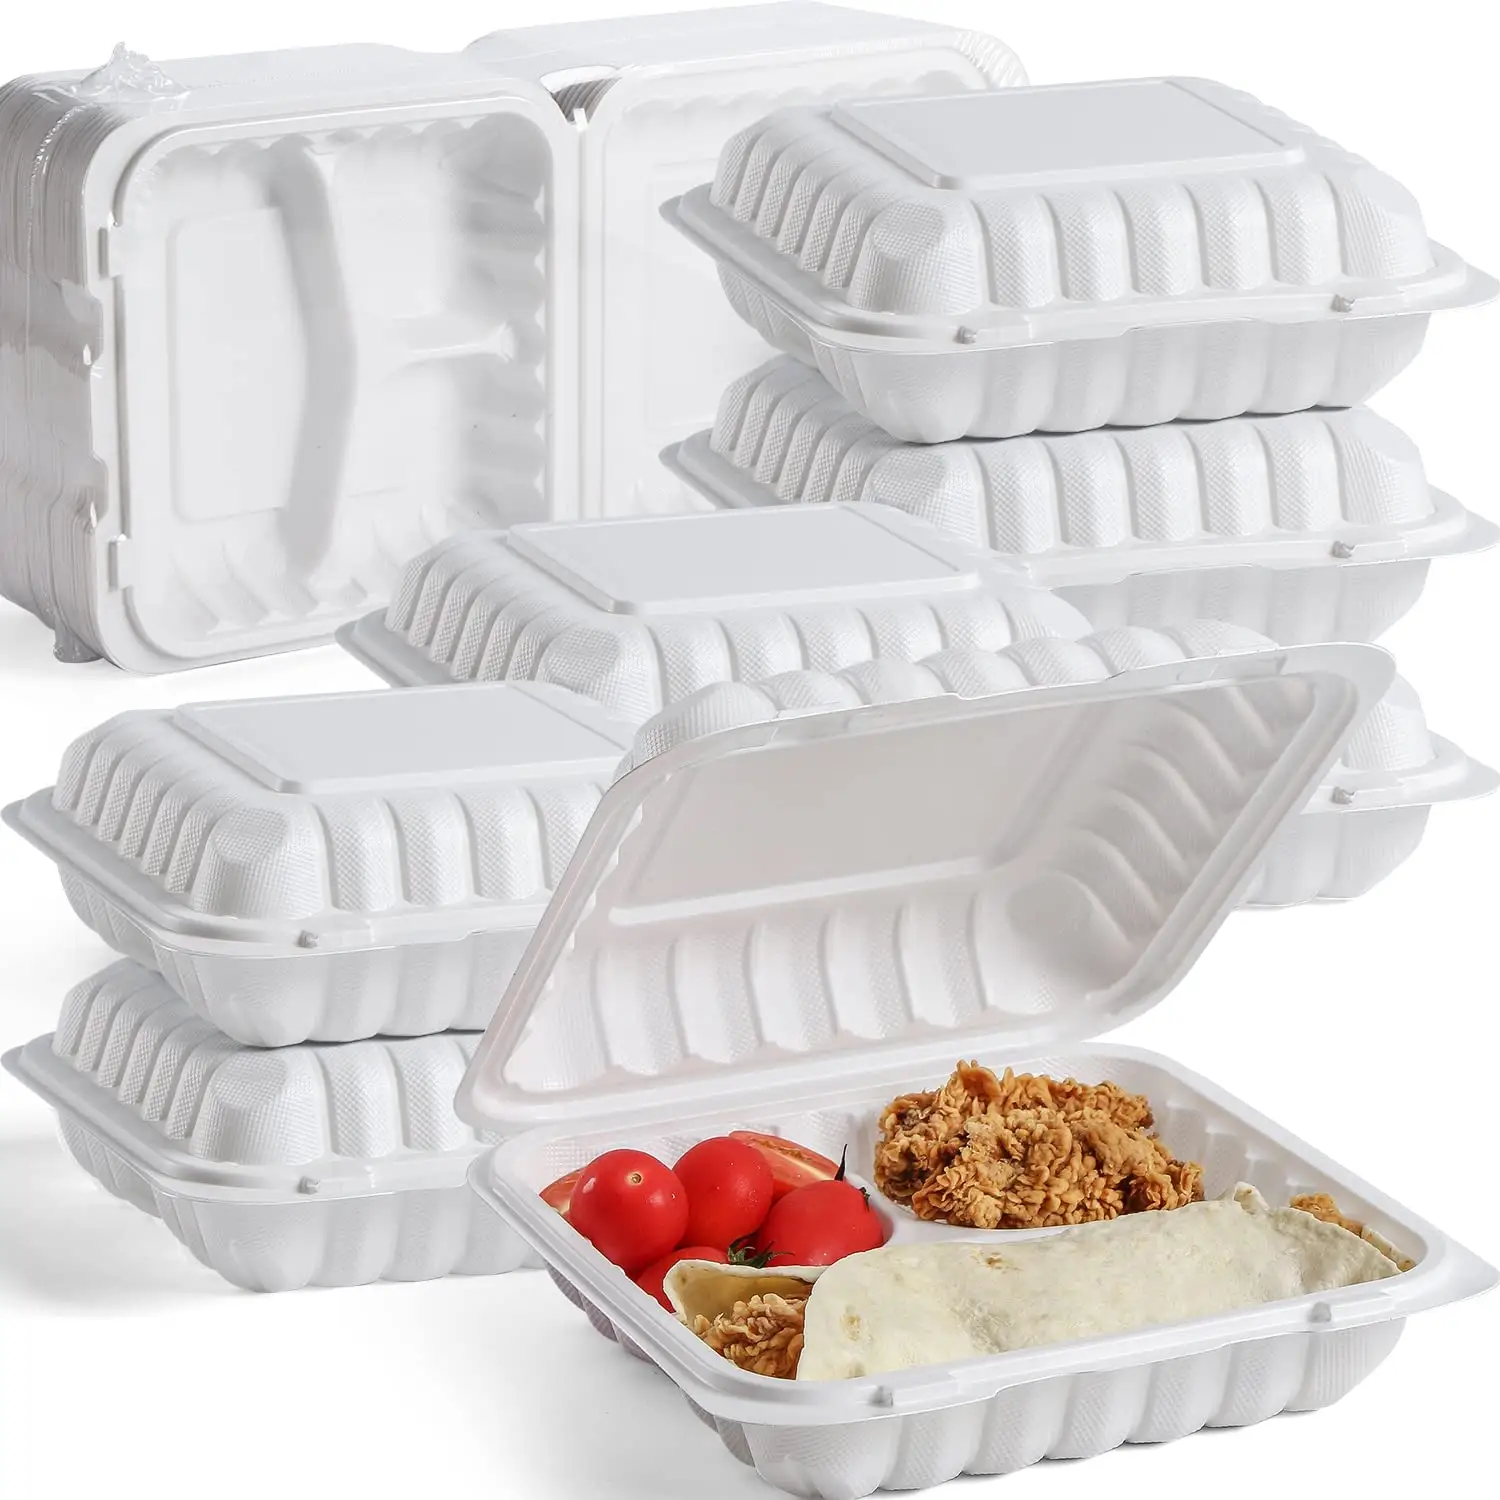 Imbiss PP Einweg-Lunchbox aus Kunststoff Lebensmittel behälter Essens zubereitung klappbarer Clamshell-Lebensmittel behälter Einweg-Lebensmittel behälter